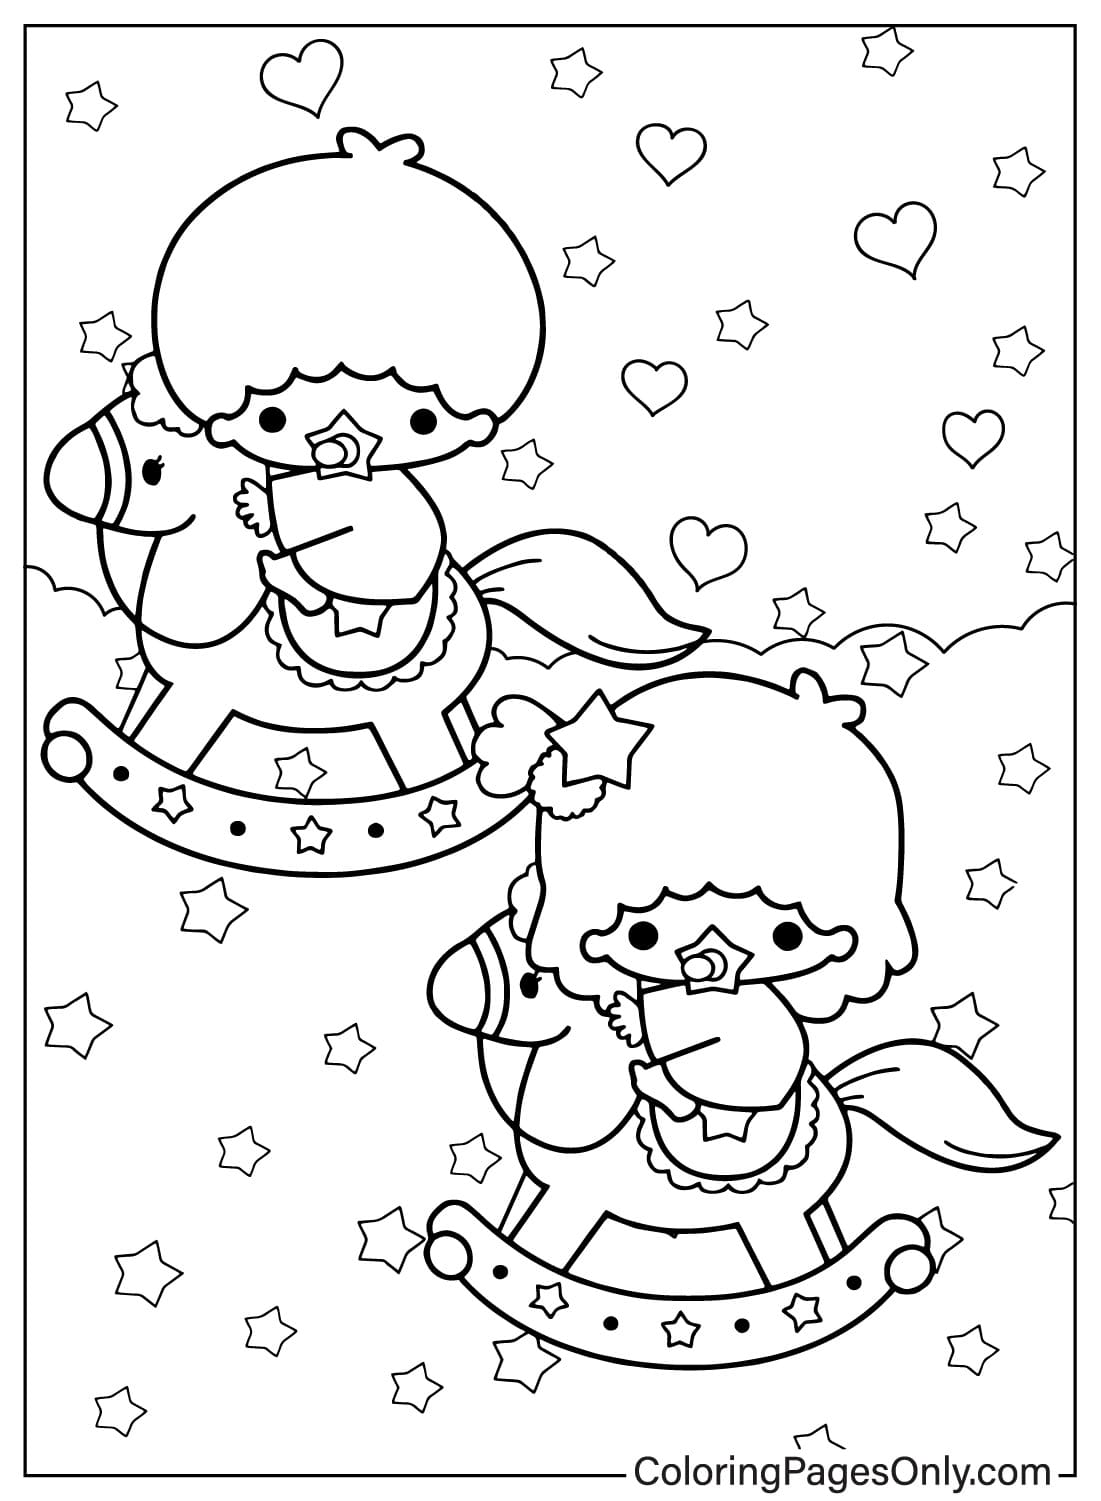 Раскраска Маленькие звезды-близнецы. Изображения из мультфильма «Маленькие звезды-близнецы».